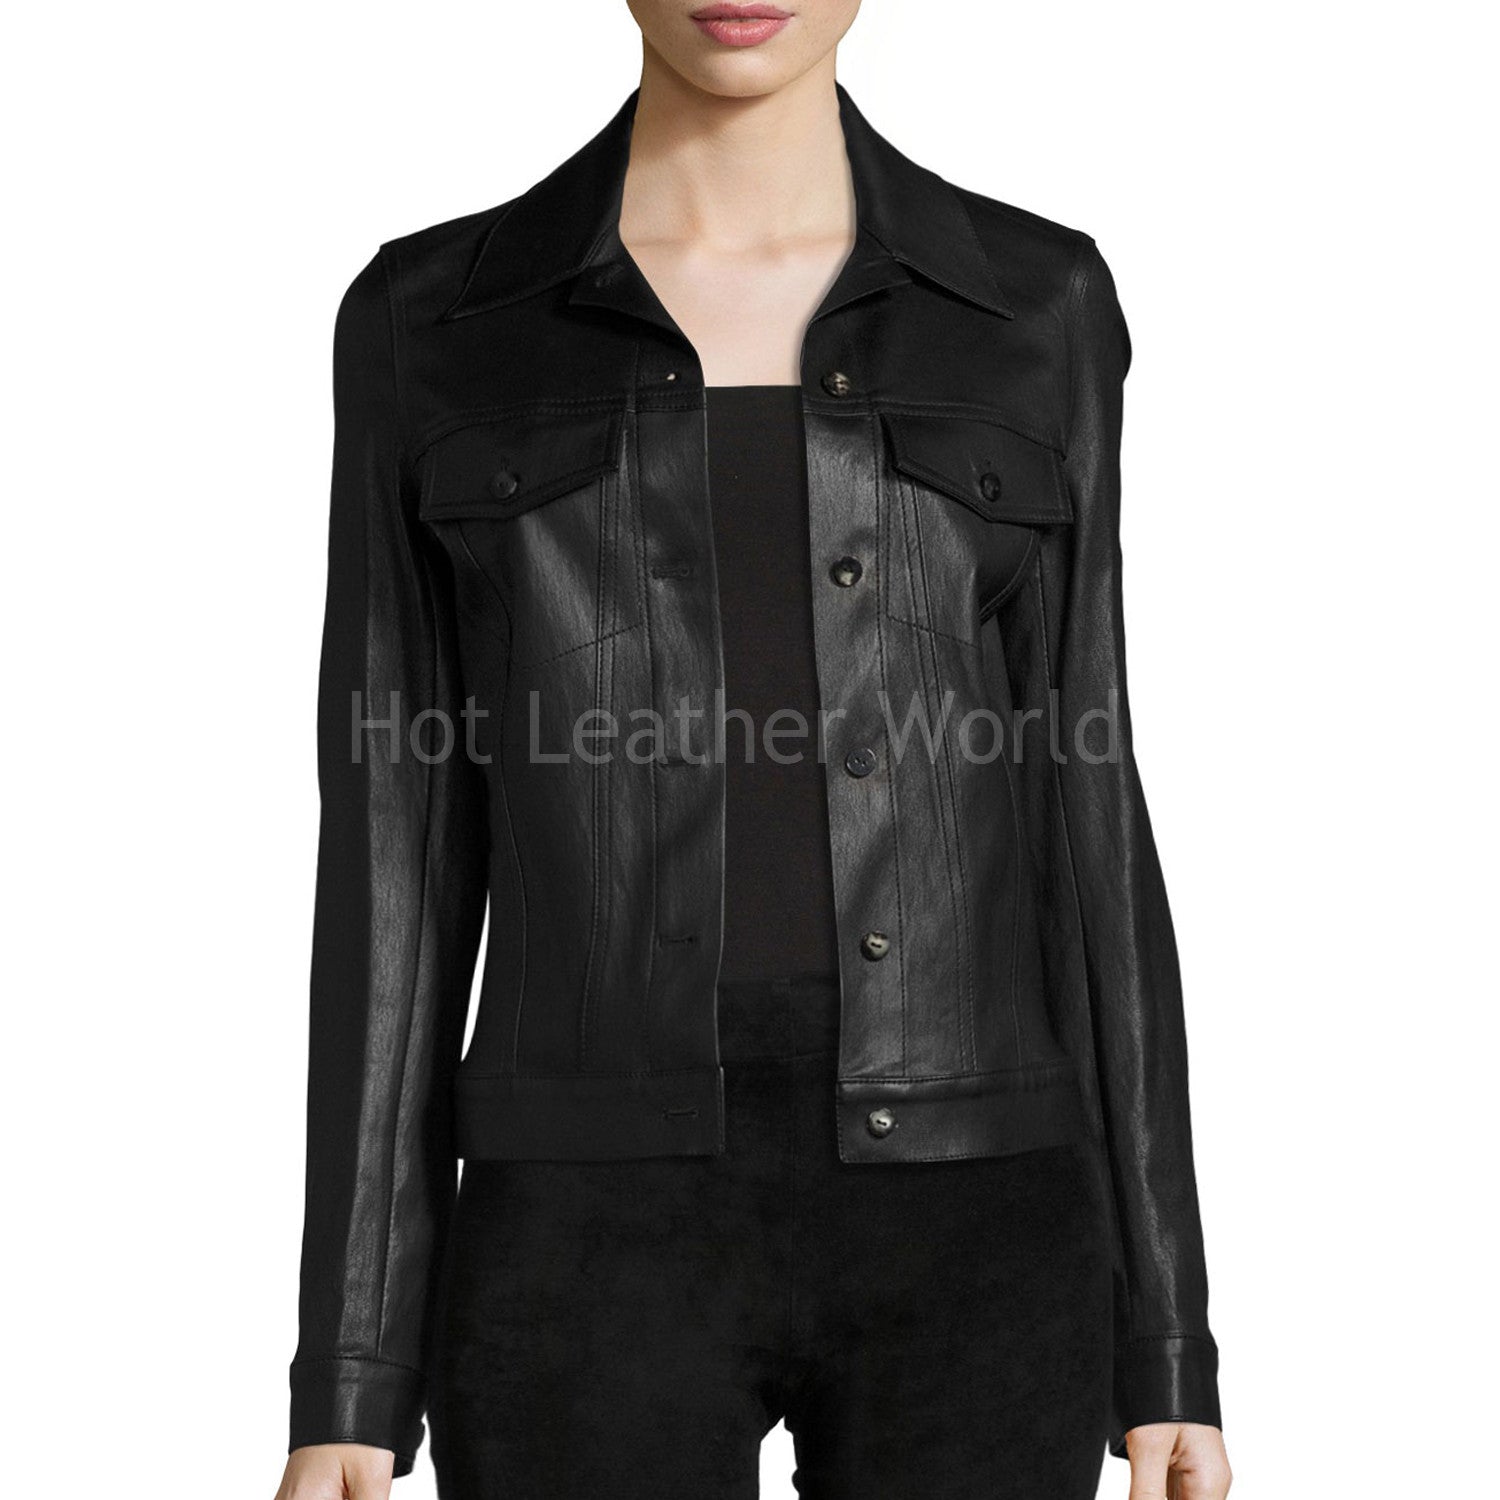 Black Lambskin Leather Jacket -  HOTLEATHERWORLD